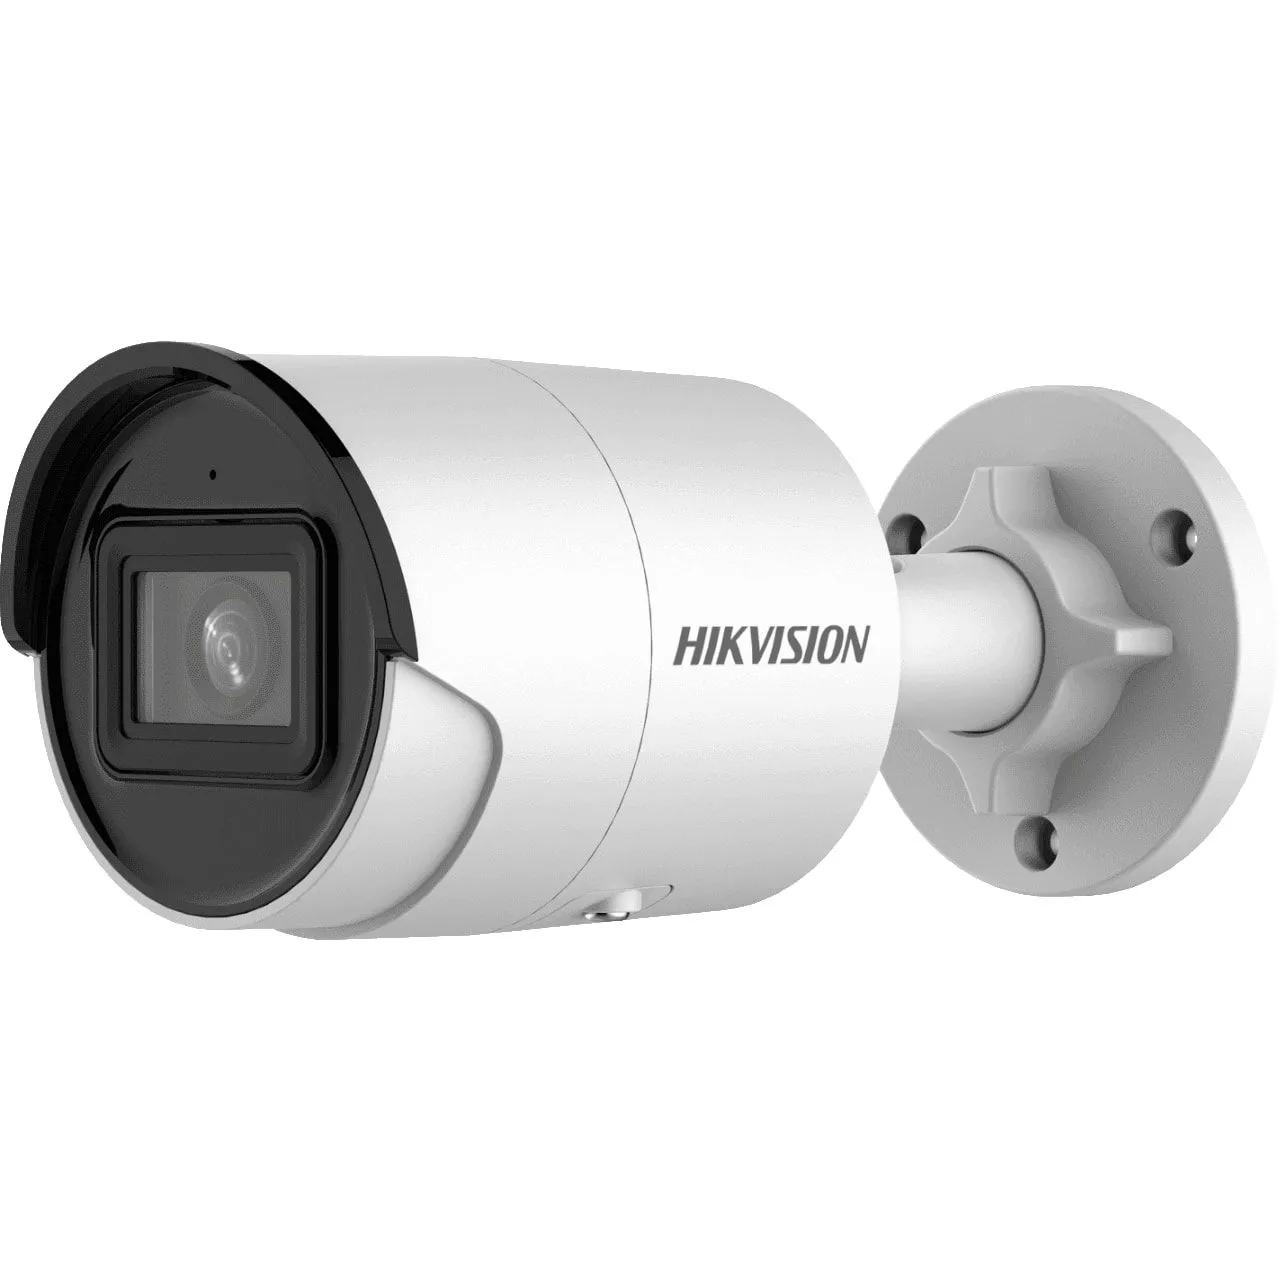 Hikvision DS-2CD2026G2-I(2.8mm)(C) 2 Megapixel Bullet IP Kamera · AcuSense KI Fehlalarmfilter · für den Innen- und Außenbereich · 120dB echtes WDR